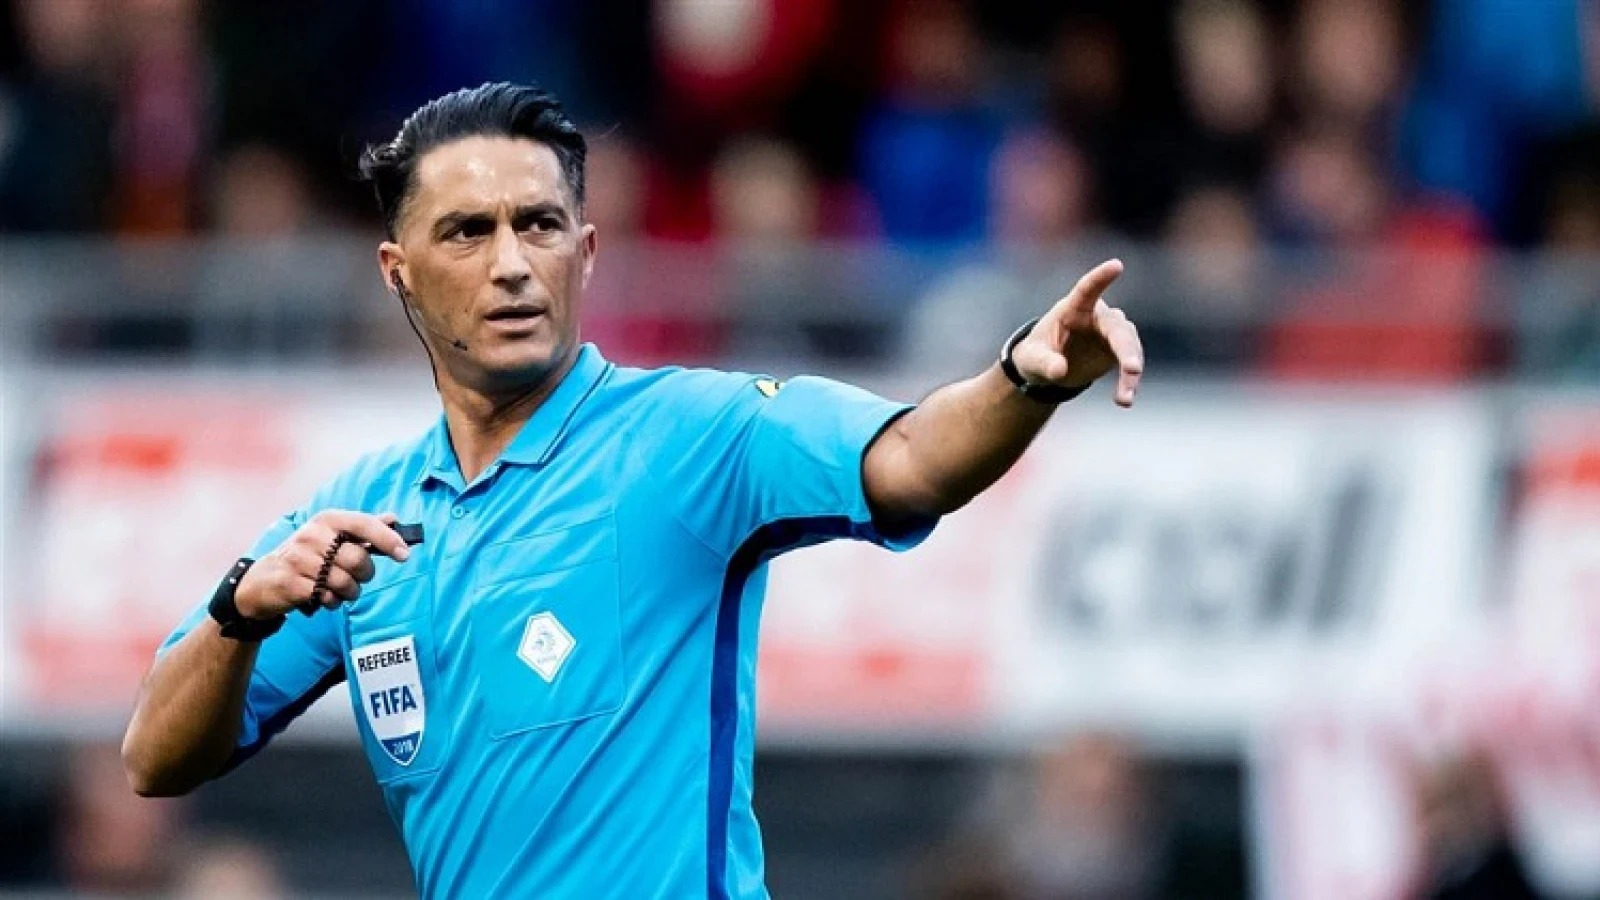 Gözübüyük scheidsrechter tijdens bekerwedstrijd Feyenoord - Fortuna Sittard